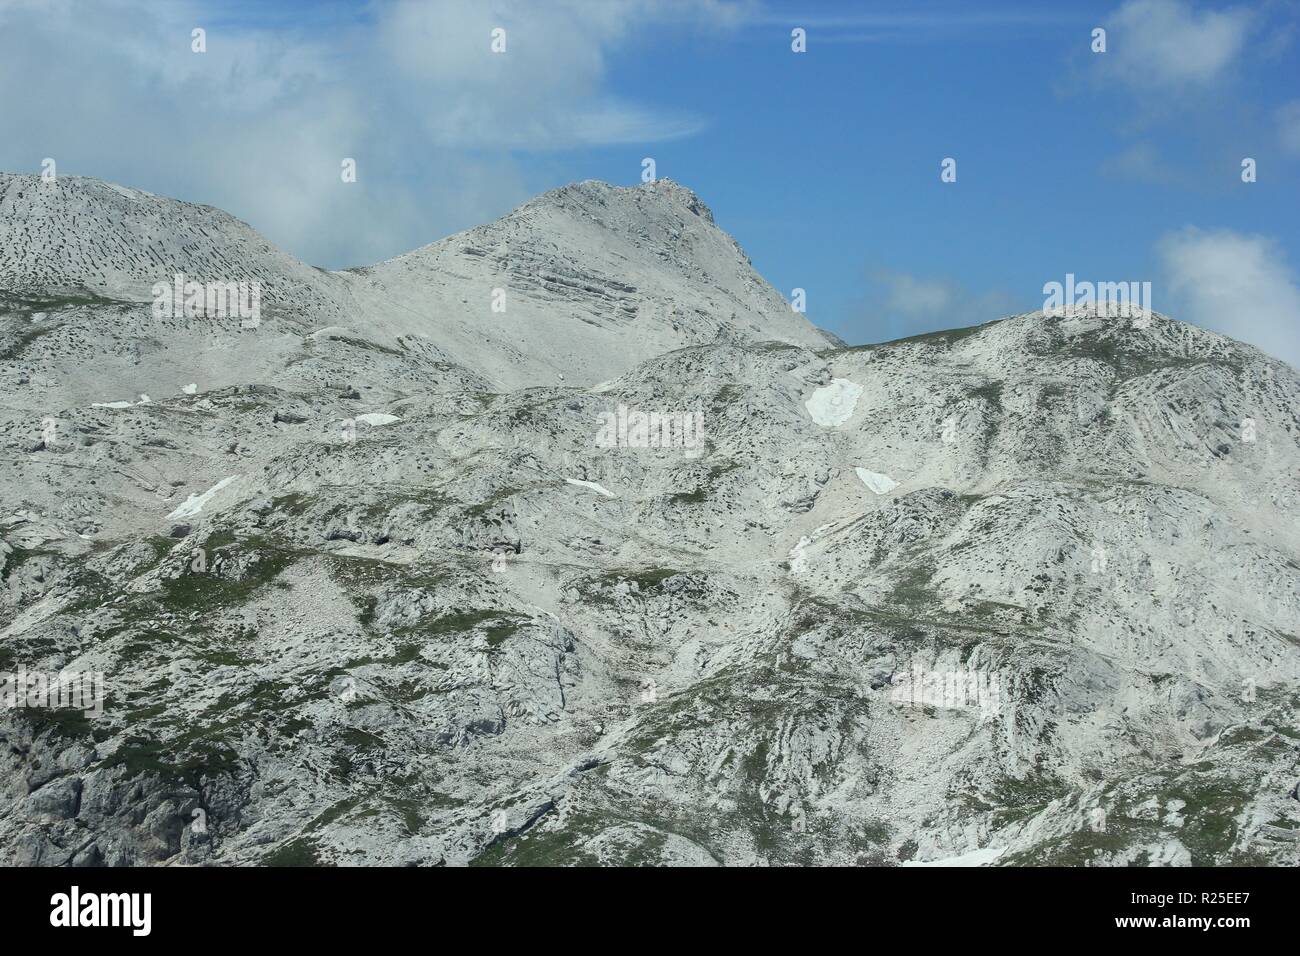 KRN Mountains - décor de champ de bataille de la première Guerre mondiale, photo aérienne, paysage des Alpes juliennes, sentier Alpe Adria, Slovénie, Europe centrale Banque D'Images